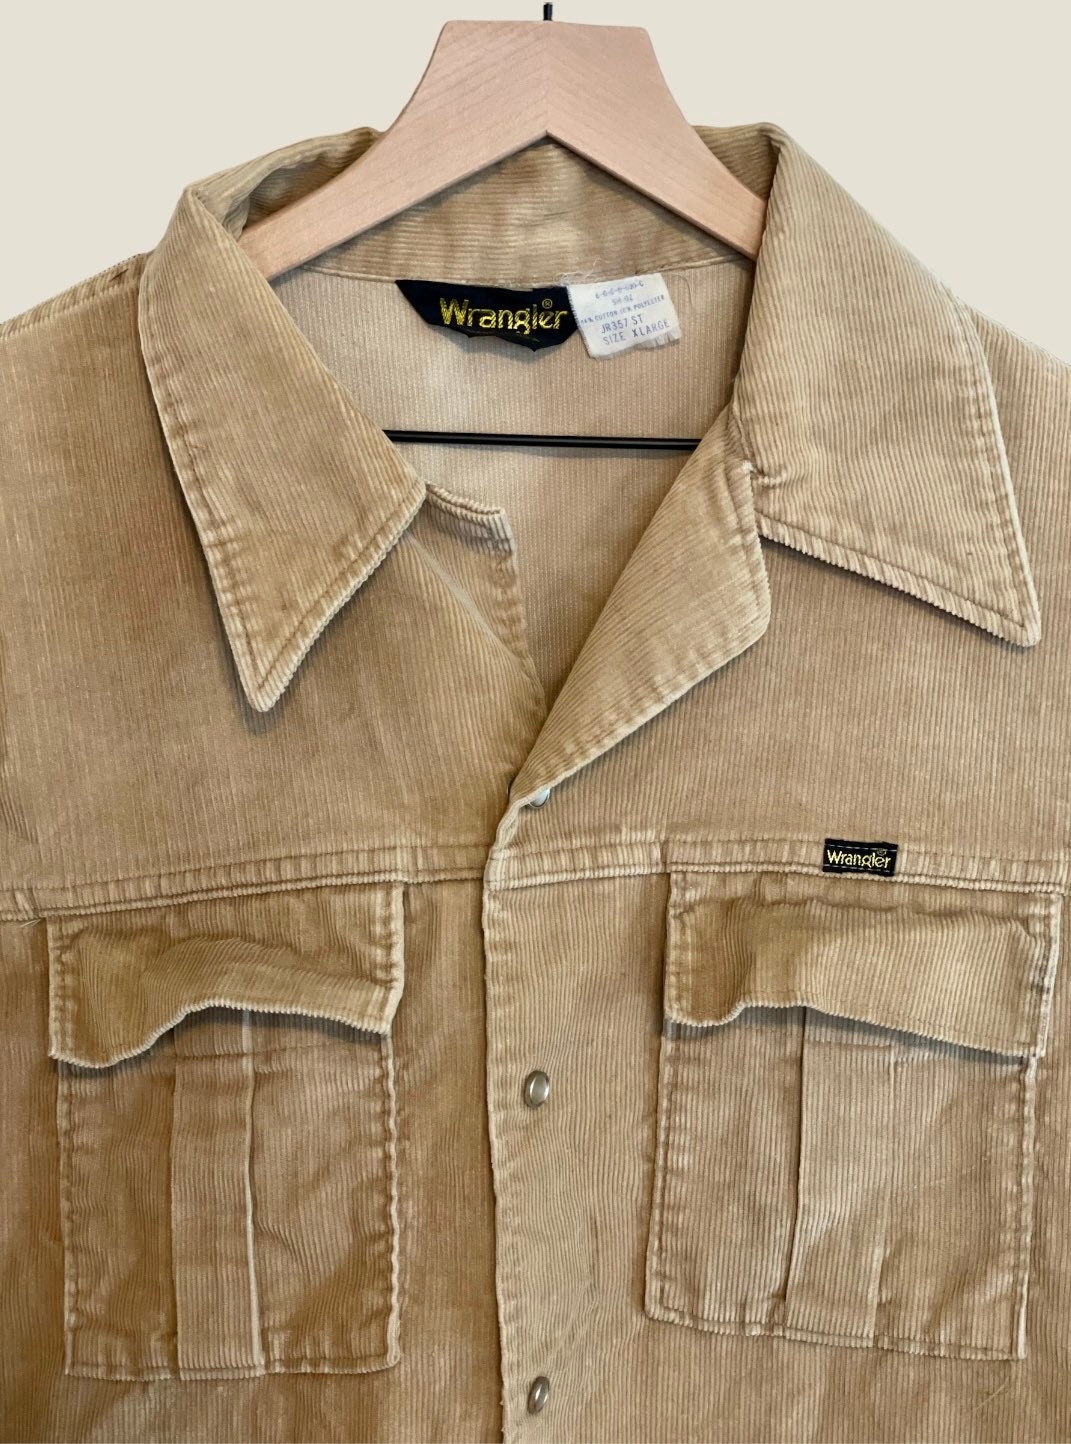 Kleding Jongenskleding Tops & T-shirts Overhemden en buttondowns Vintage Inspired 70s westerse Corduroy Shirt 4T 